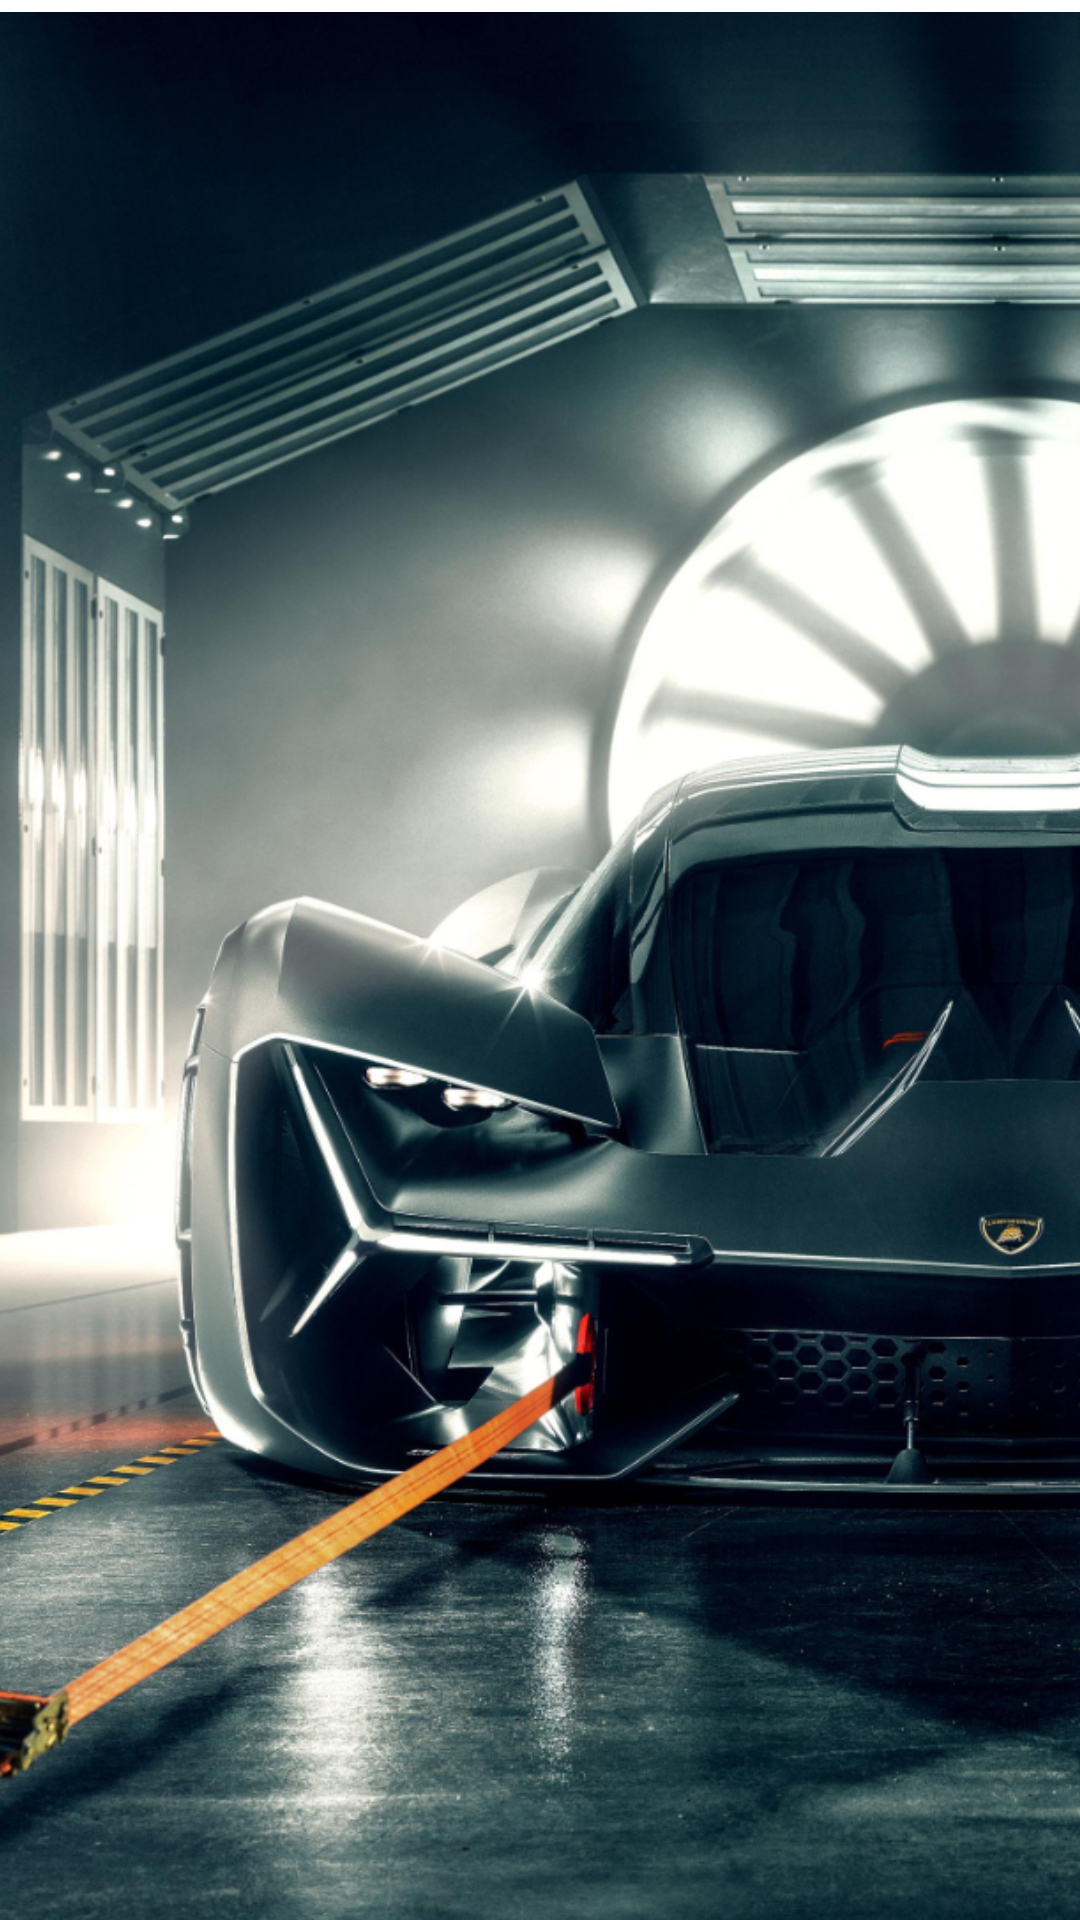 Learn More About the Lamborghini Terzo Millennio Concept